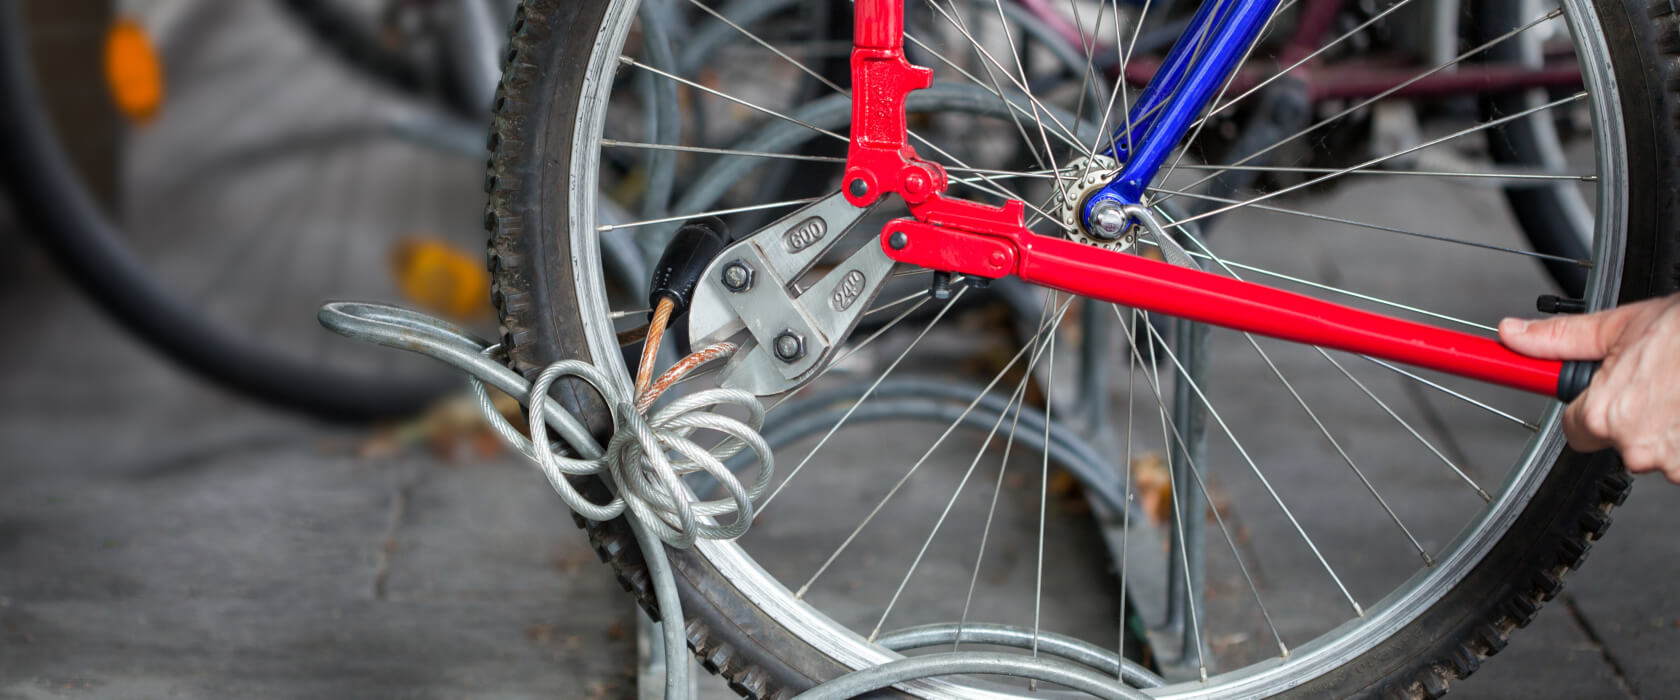 Fahrraddiebstahlversicherung